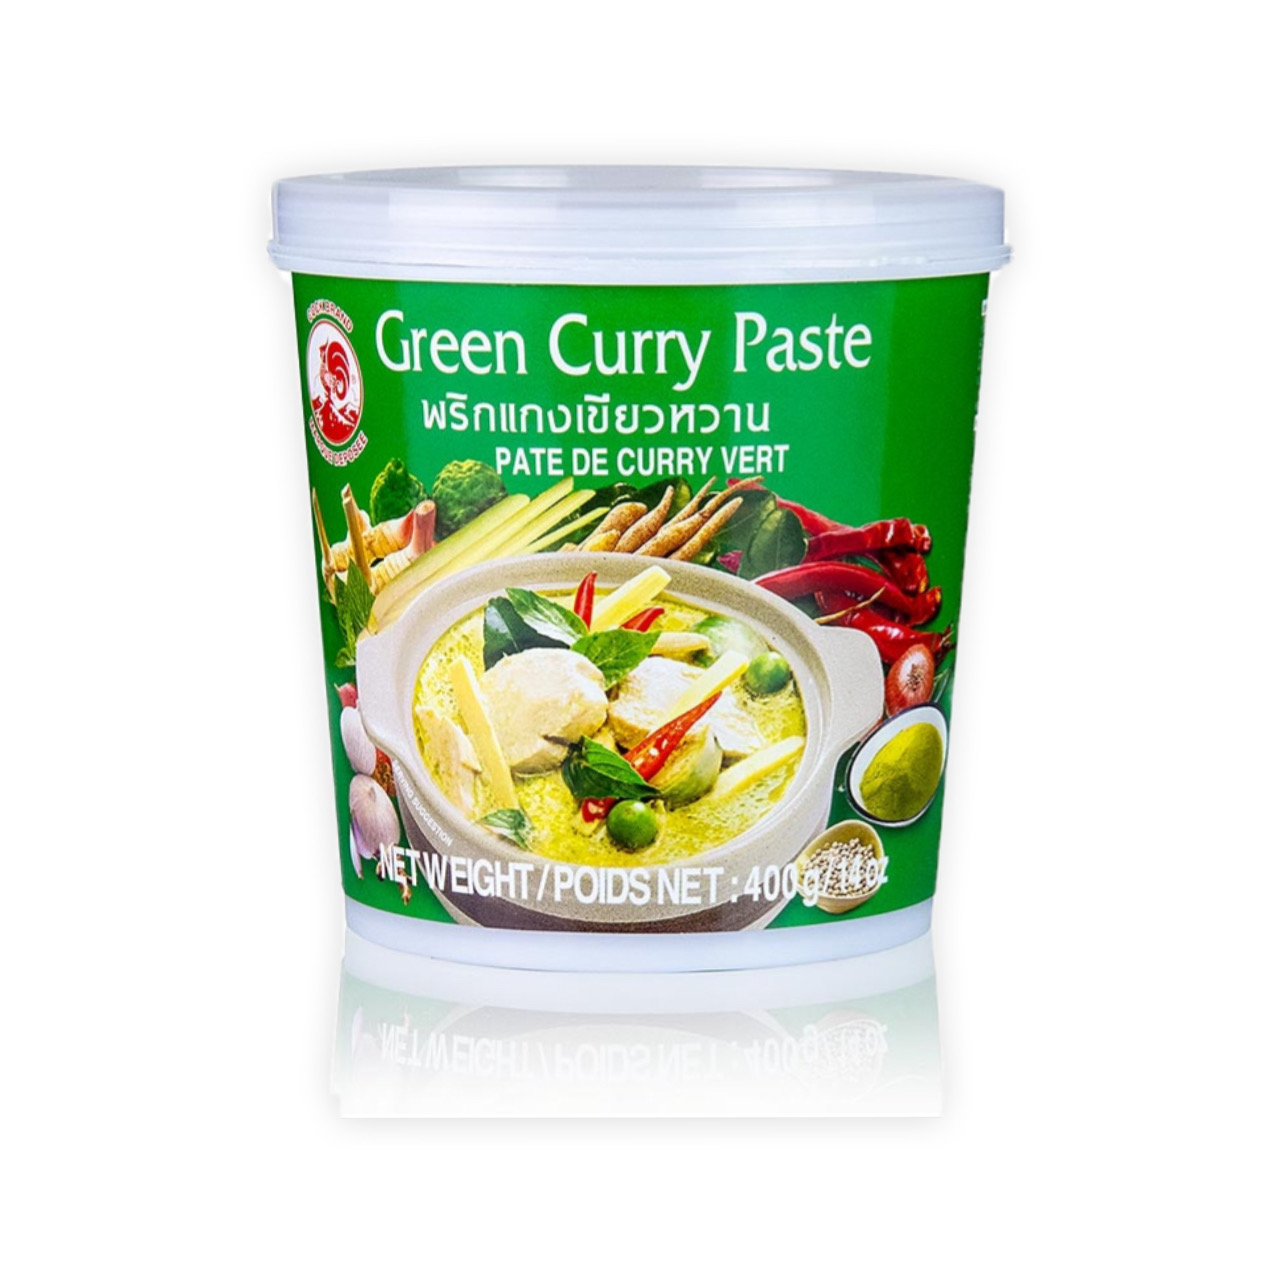 رب کاری سبز ( کاری پیست ) 400 گرم سوپر شف – super chef Green curry paste